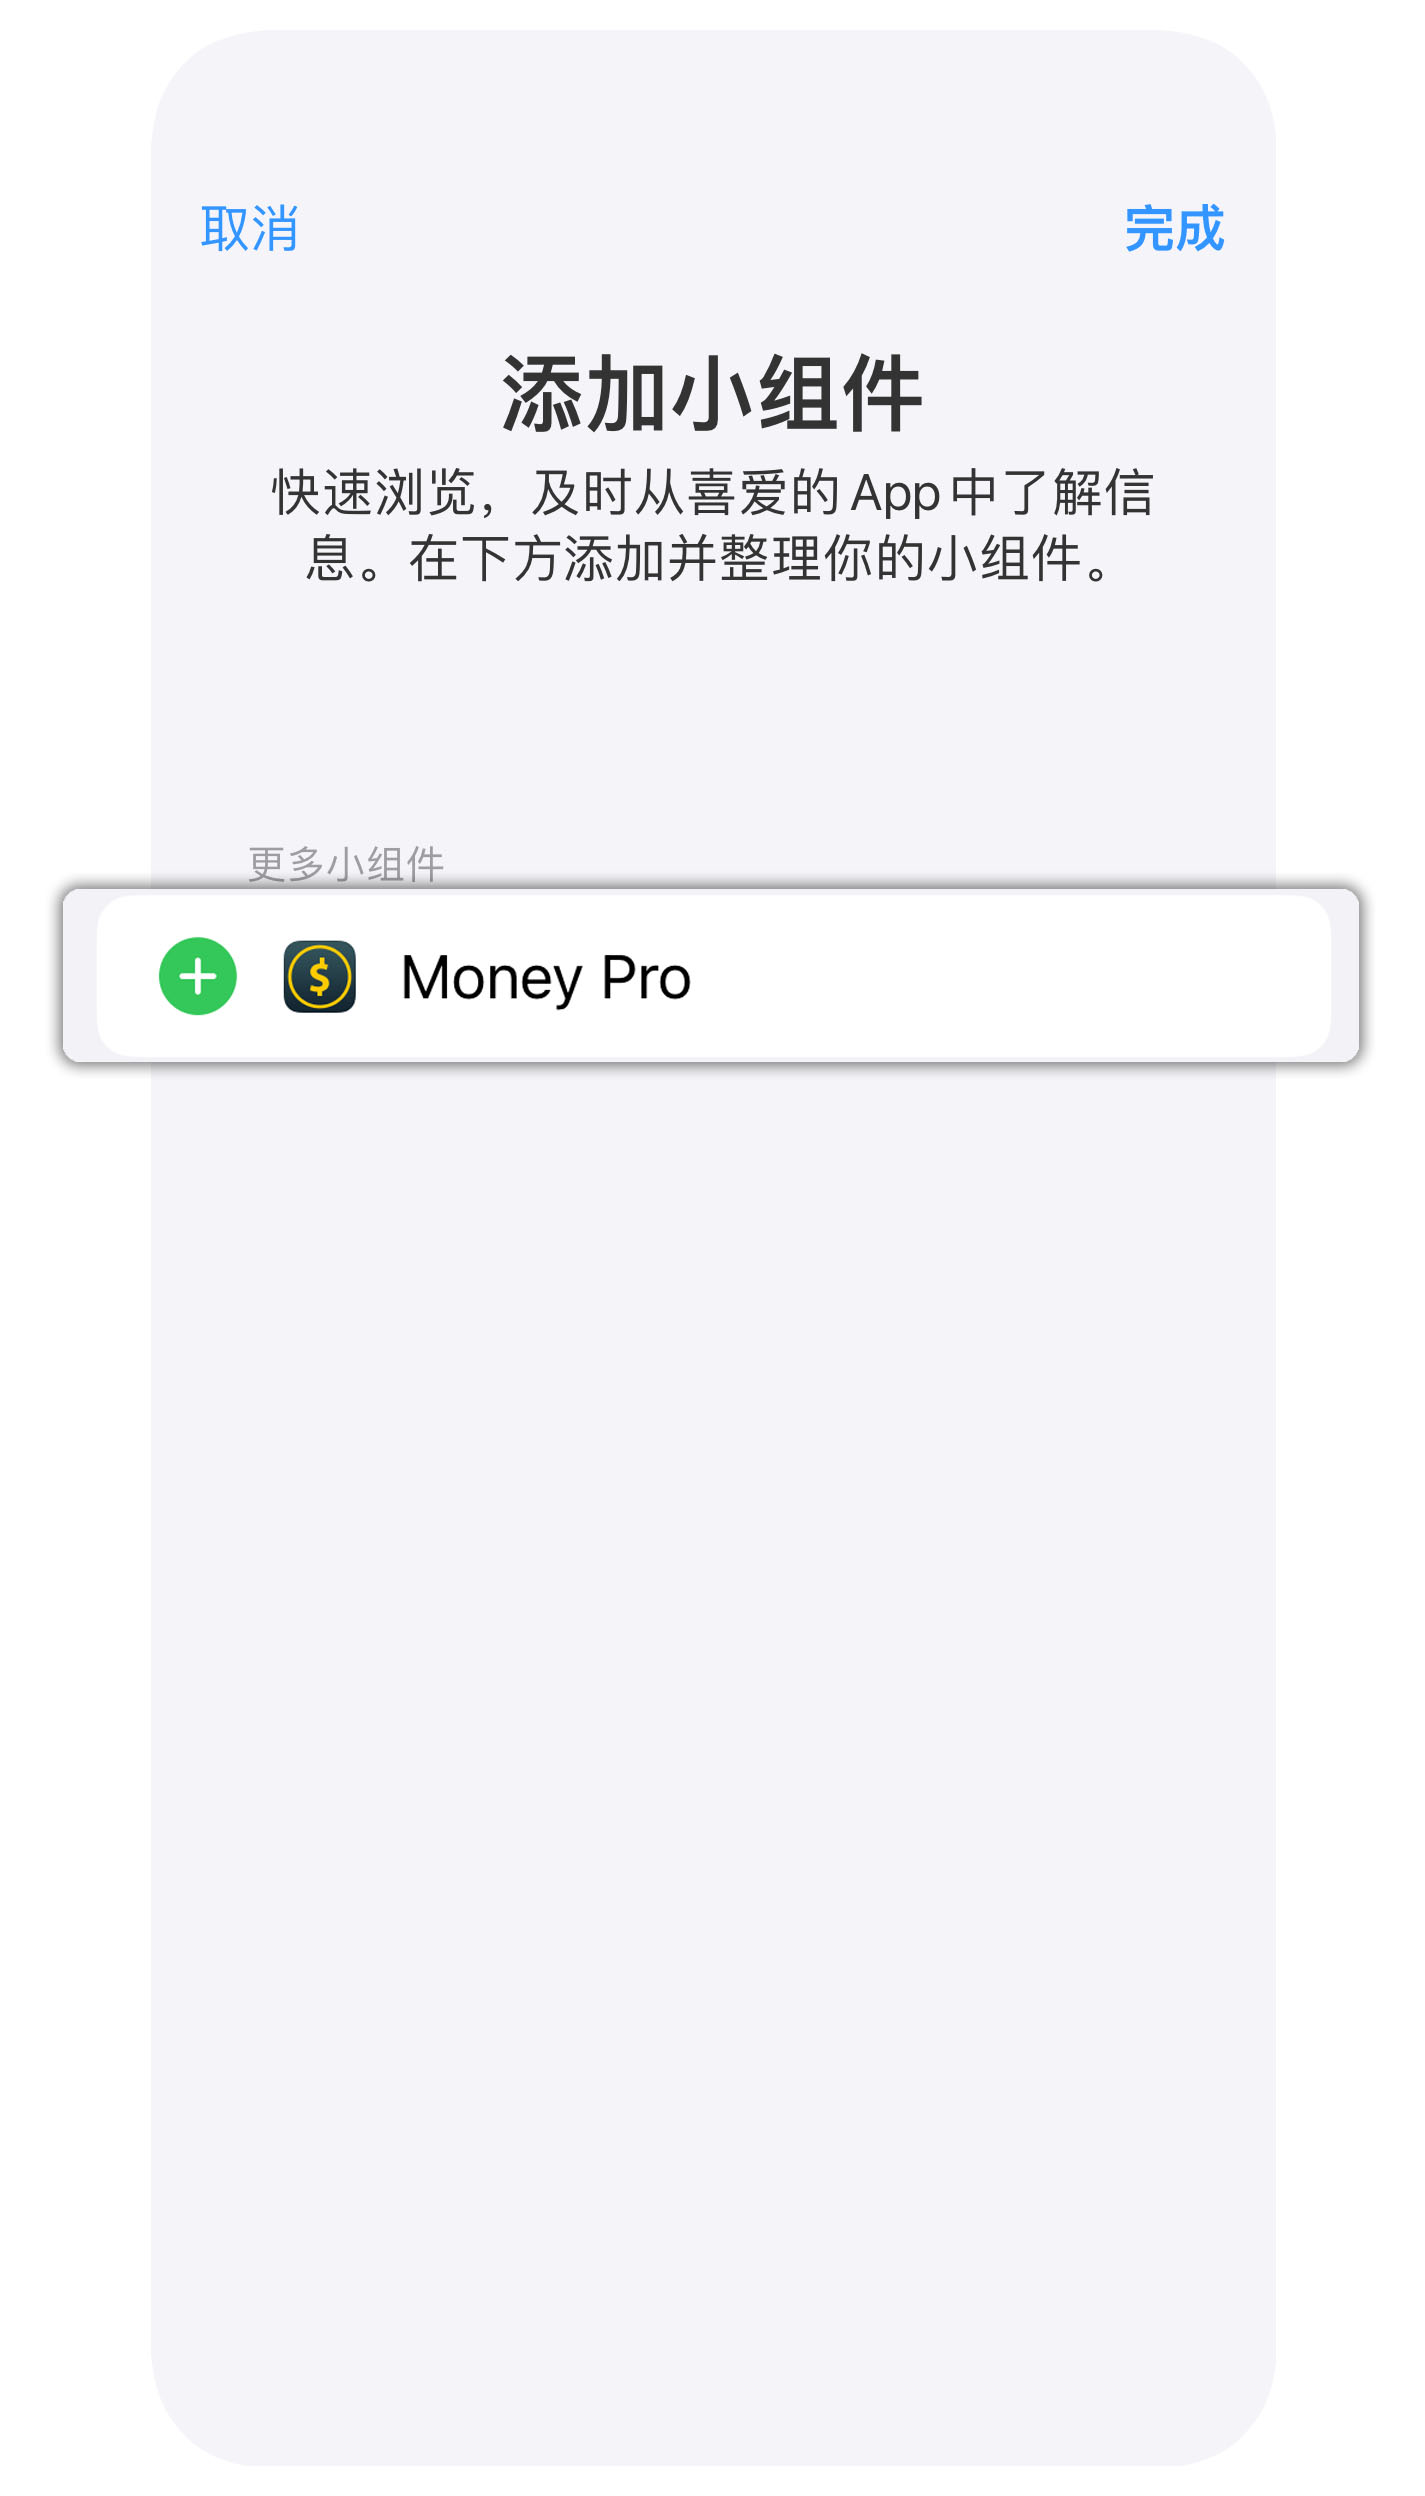 Money Pro - 今日微件 - iPhone